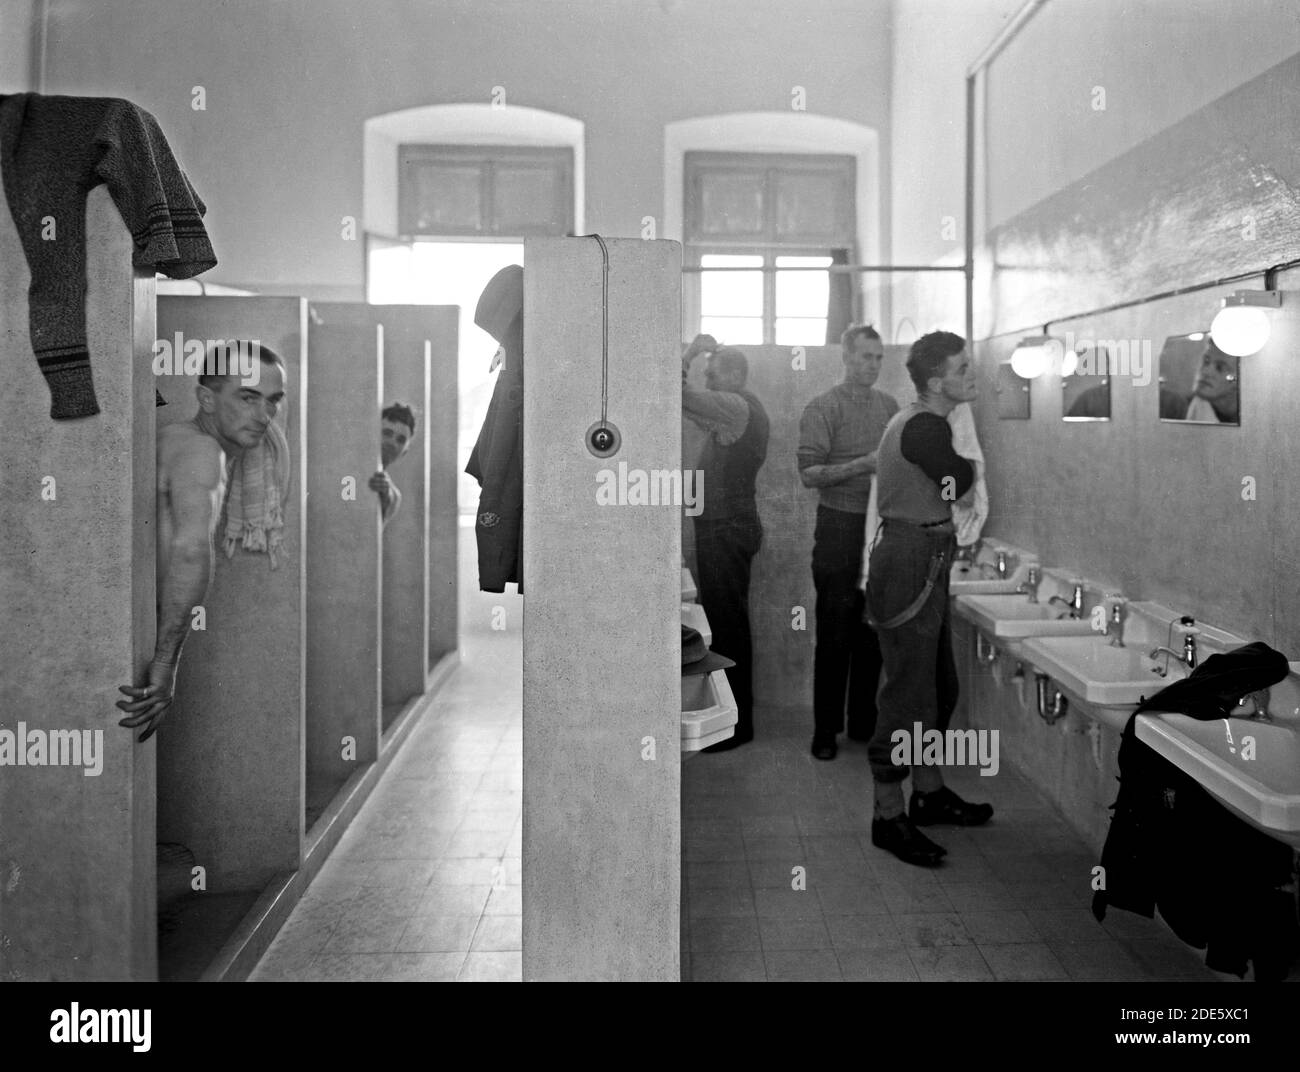 Histoire du Moyen-Orient - Aust. [c.-à-d. Australian] Fonds de confort Hostel pour les soldats dans l'école grecque Old City. Salle de lavage Banque D'Images